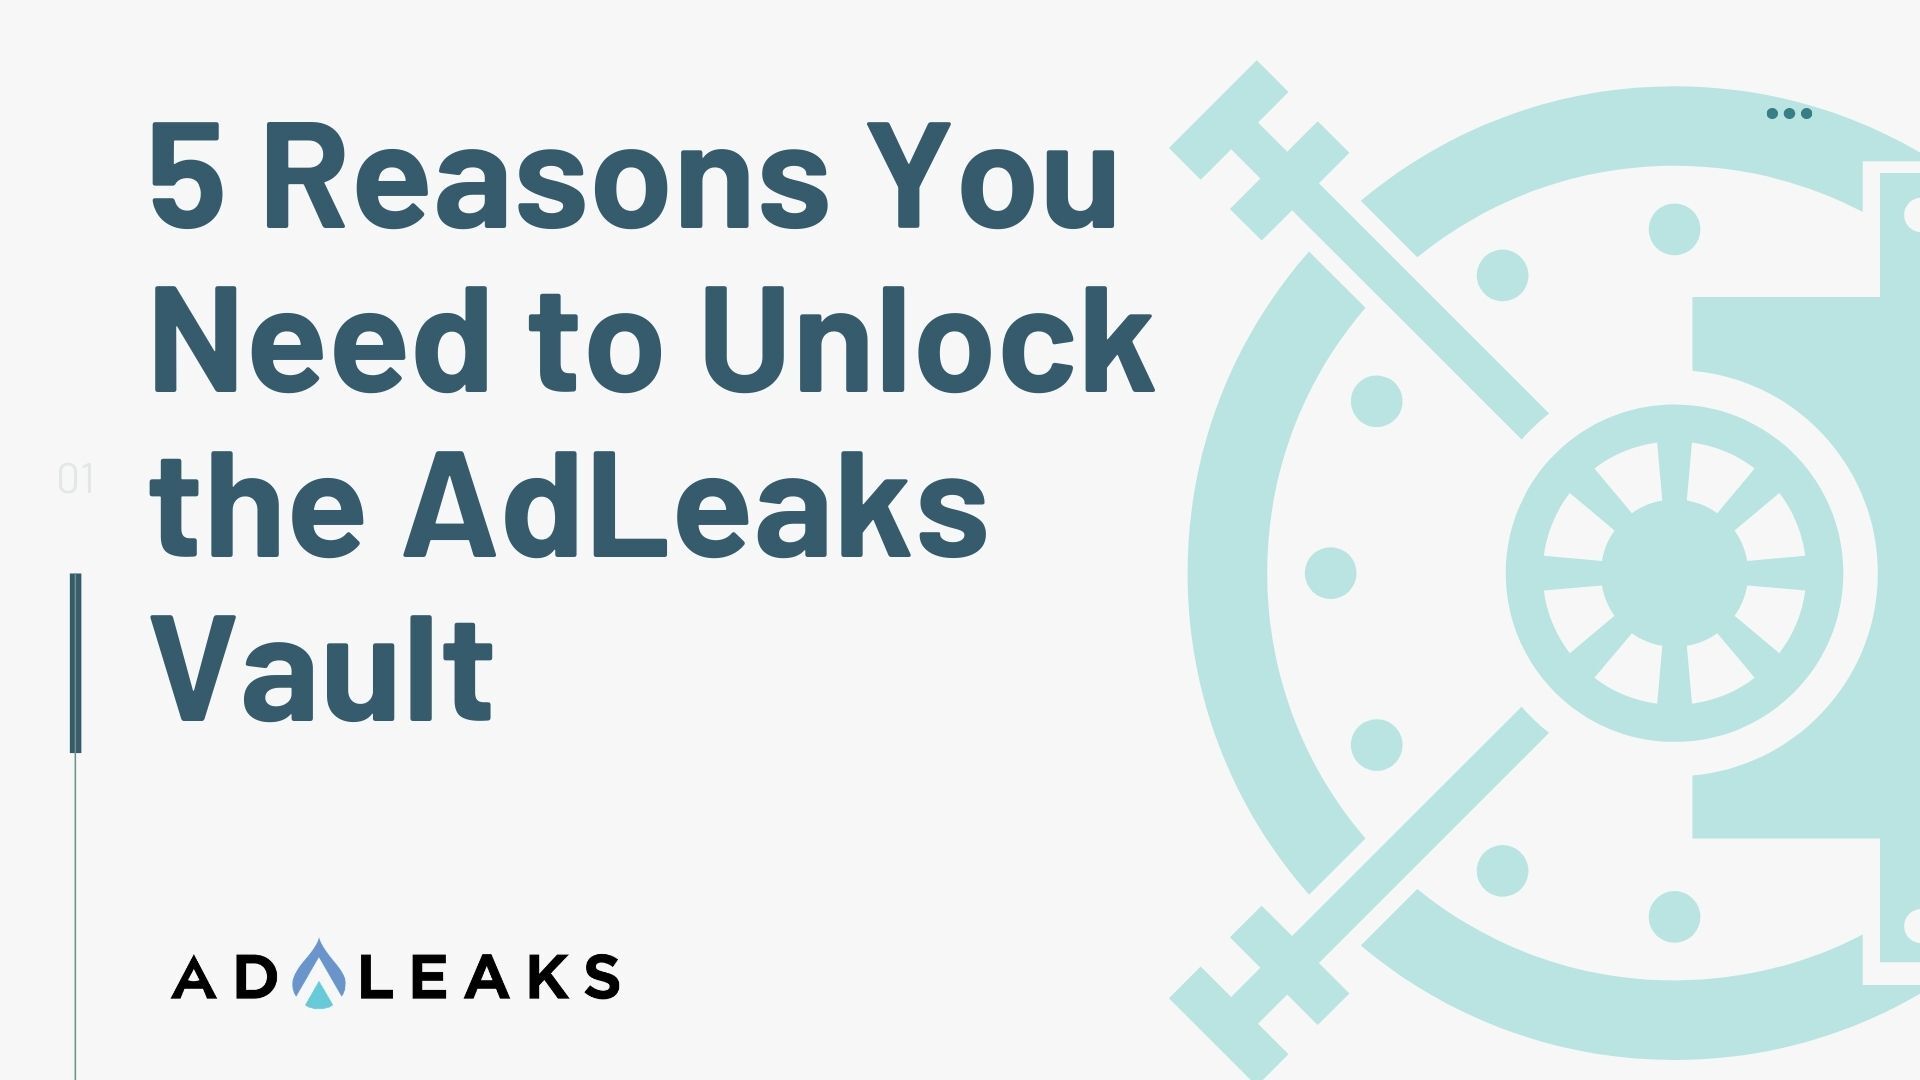 adleaks vault featured